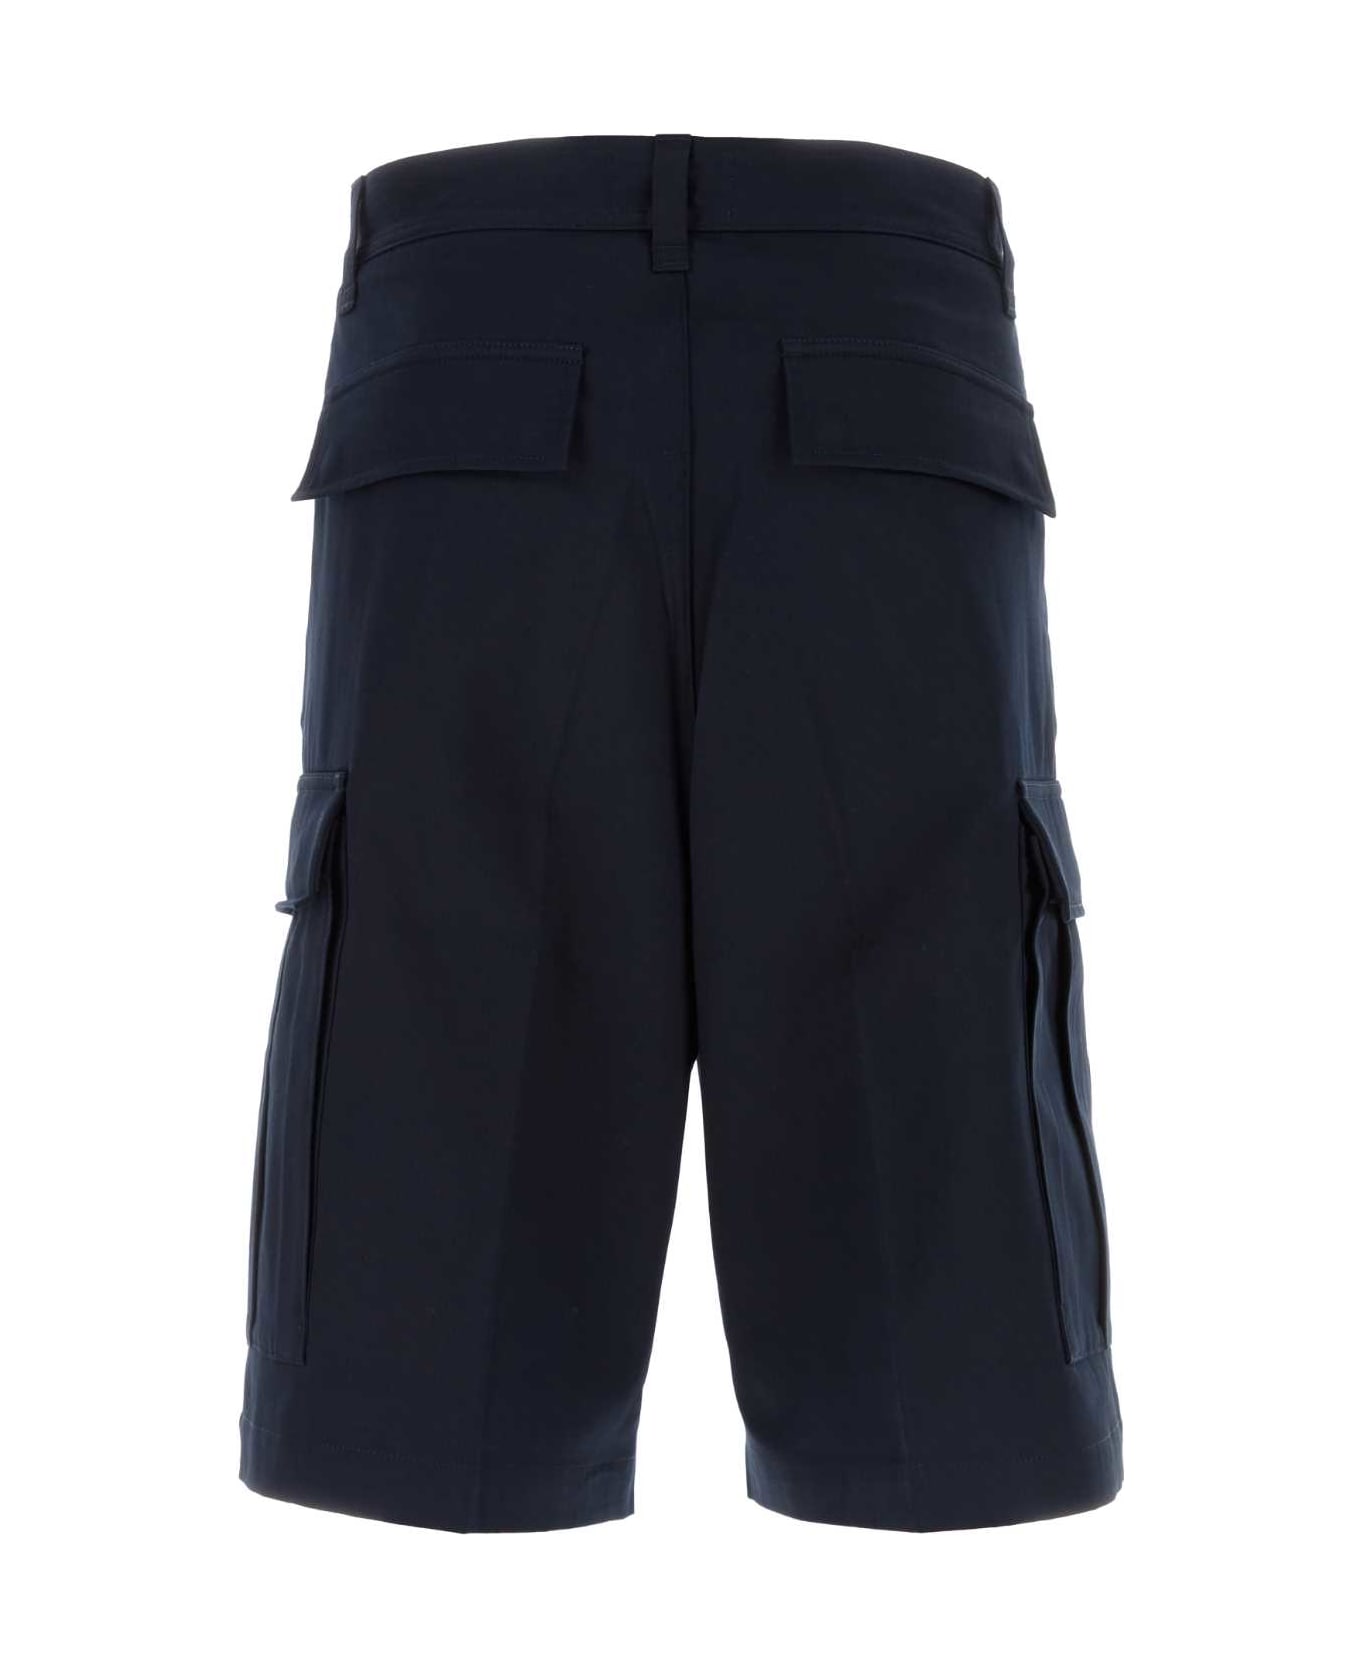 Ami Alexandre Mattiussi Midnight Blue Cotton Bermuda Shorts - 491